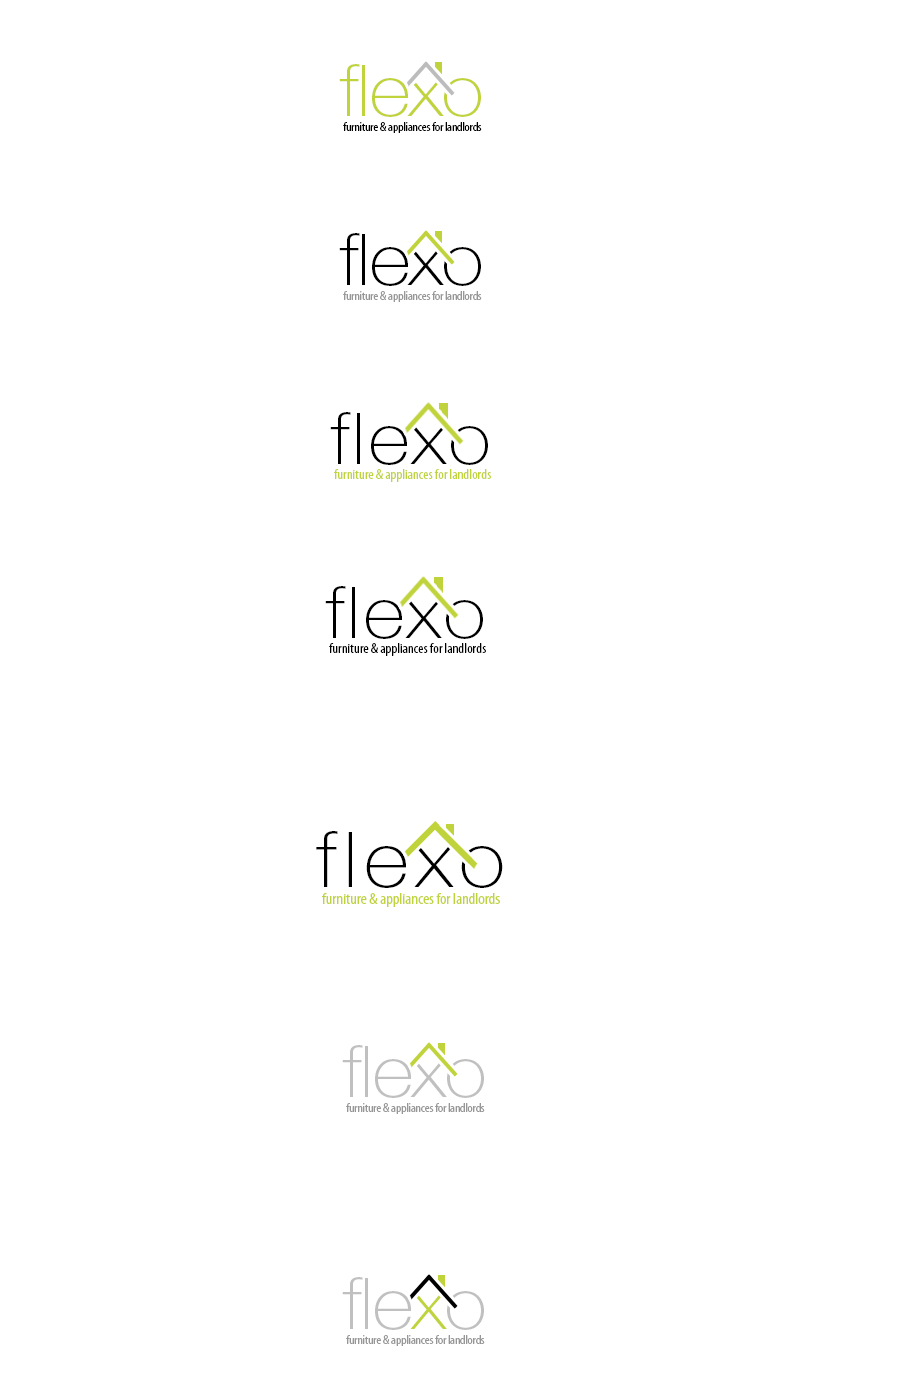 flexo_logo